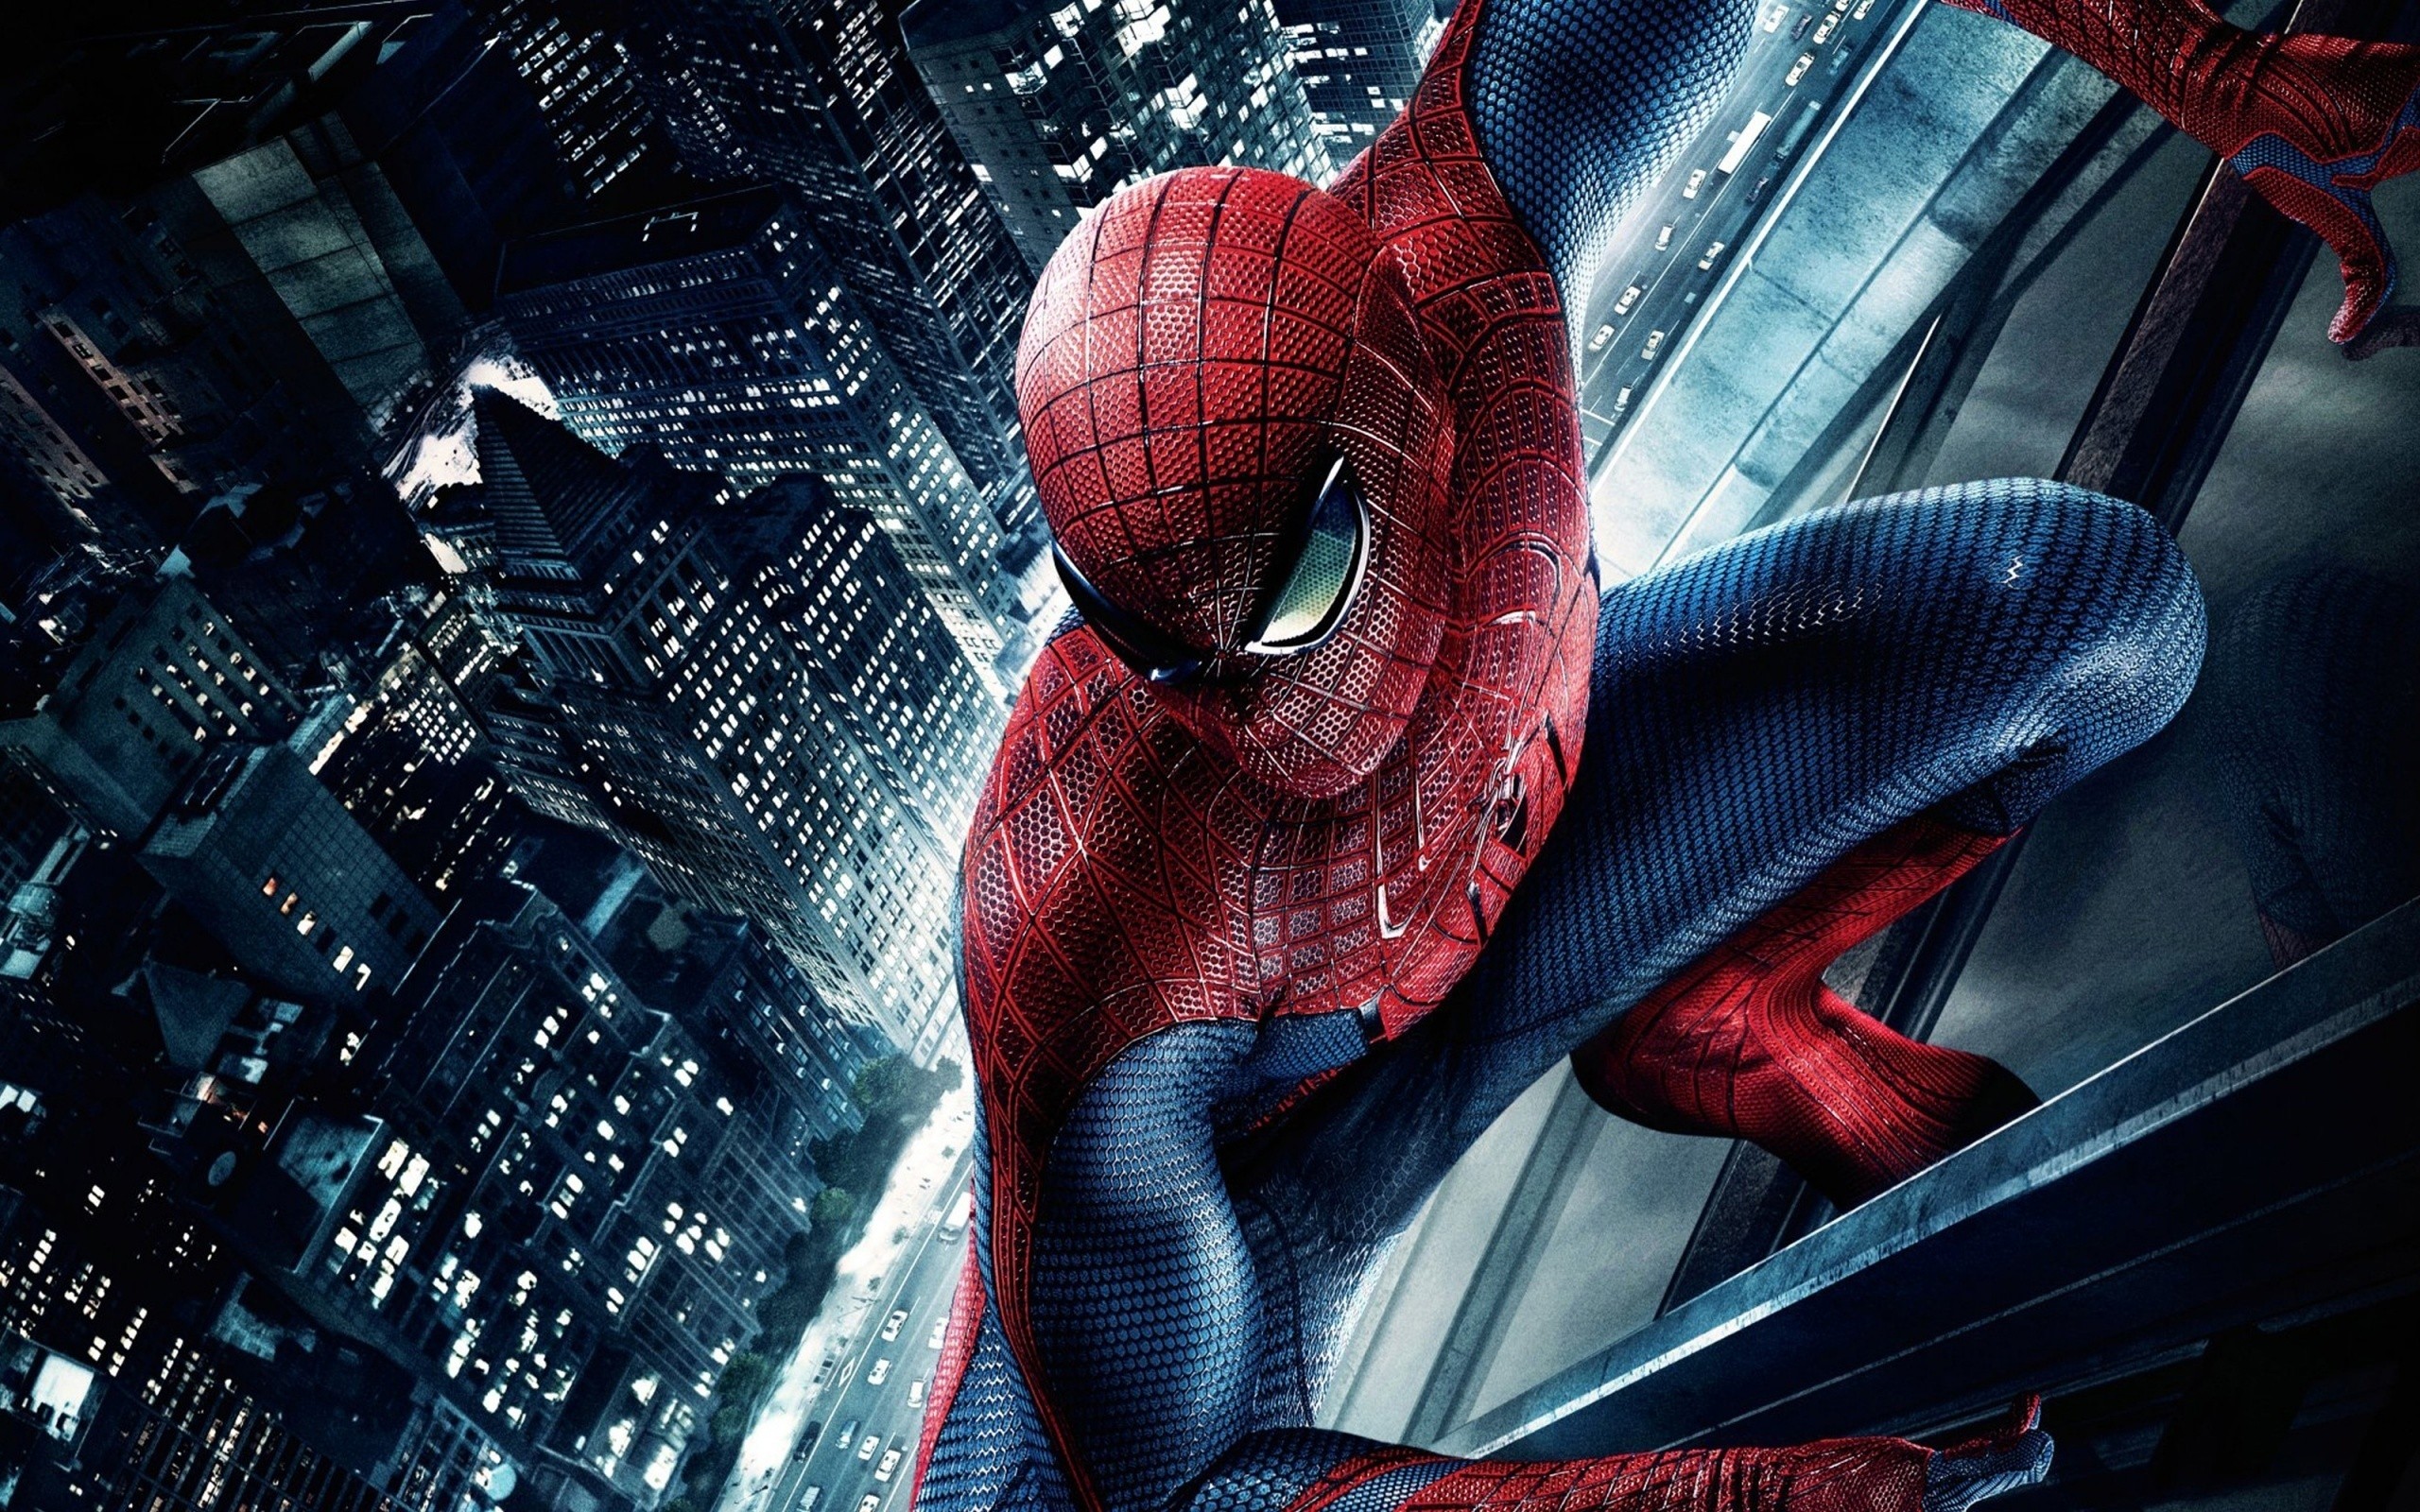 General 2560x1600 Spider-Man digital art The Amazing Spider-Man movies